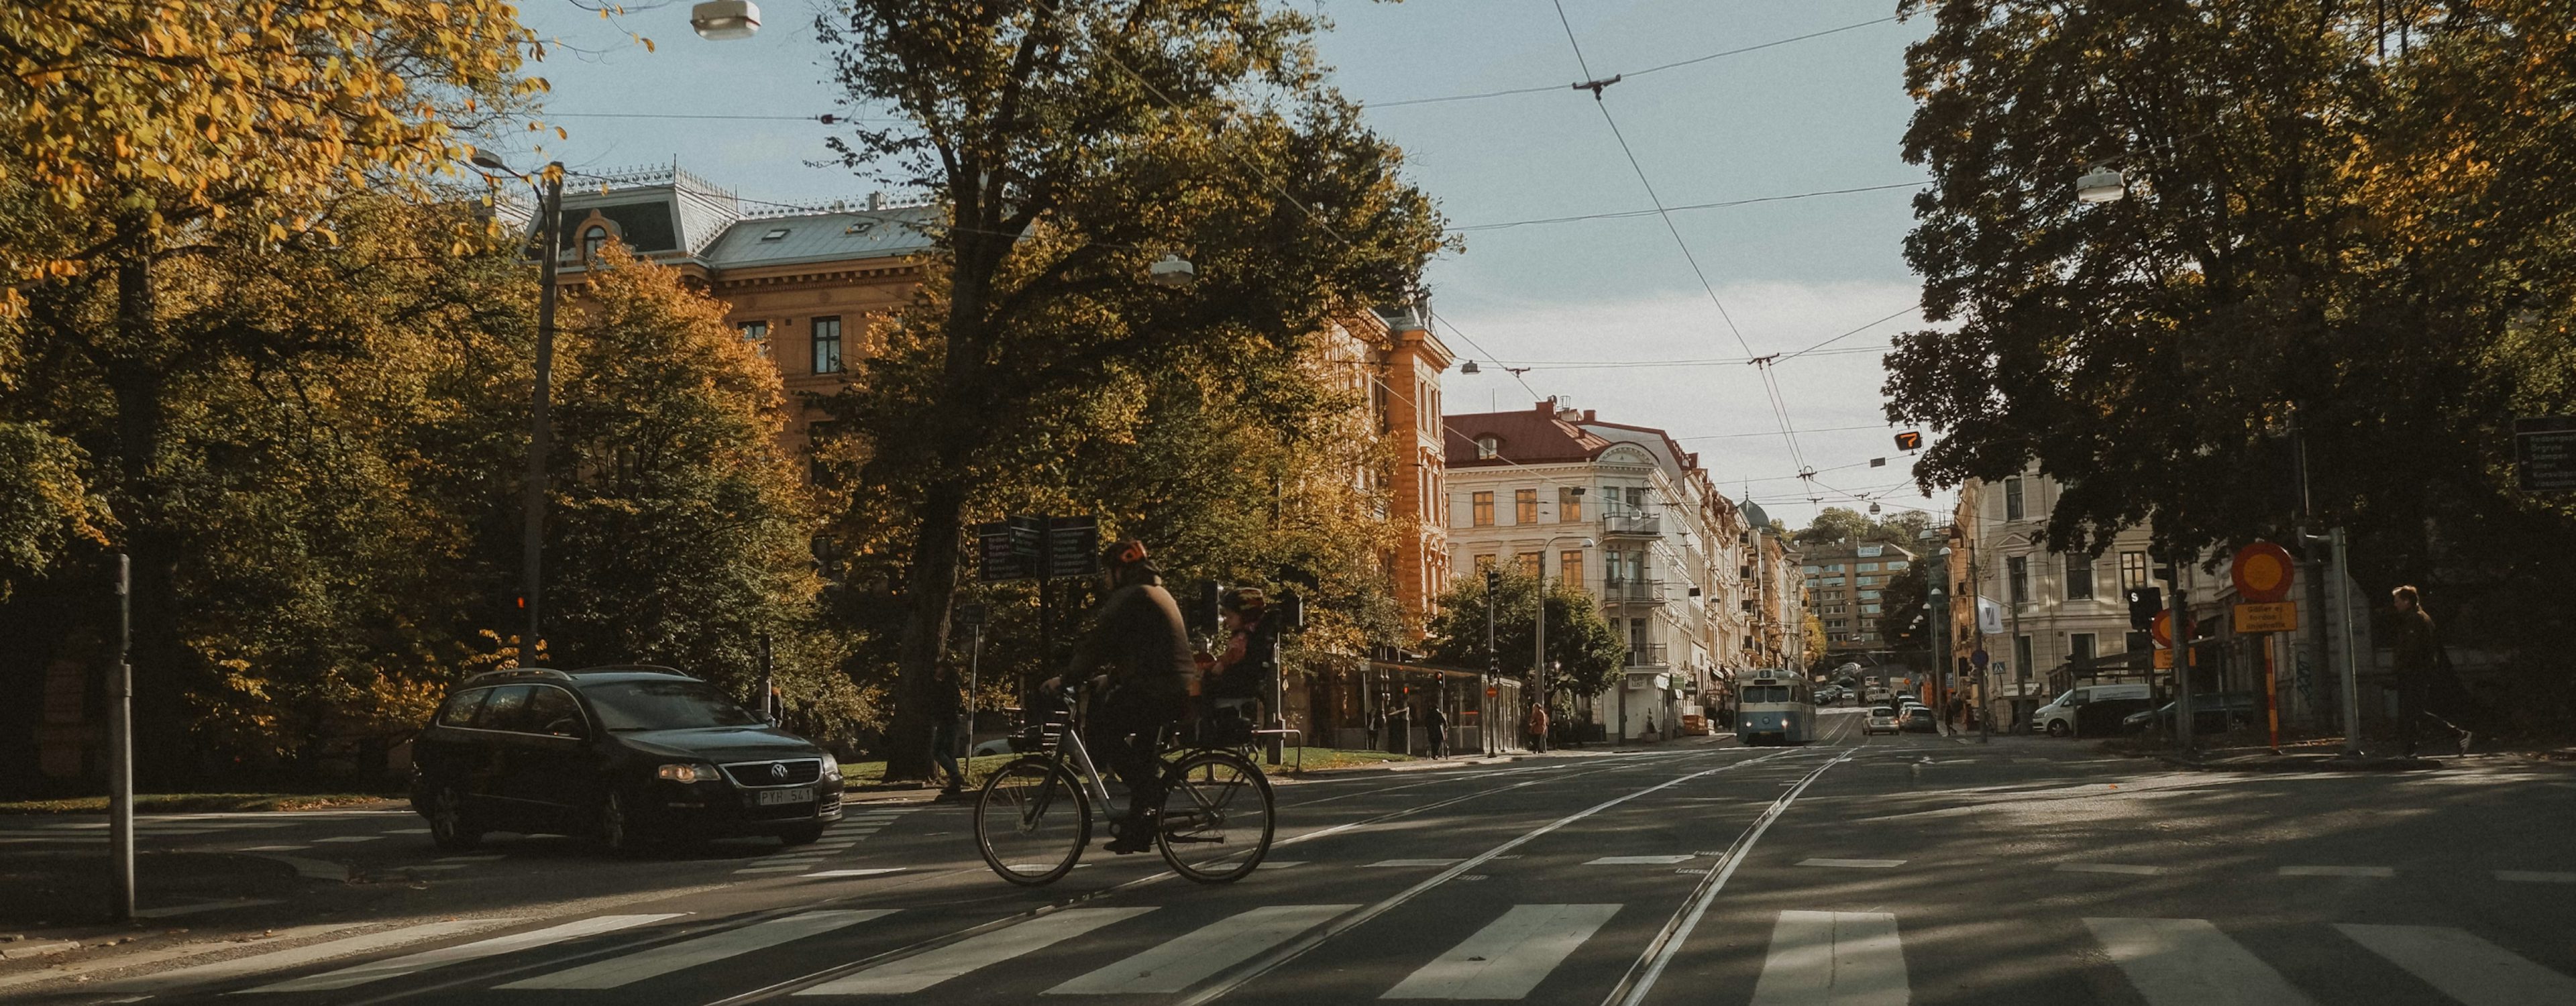 Livlig gata i Göteborg med cyklister och bilar, omgiven av klassiska byggnader och höstträd